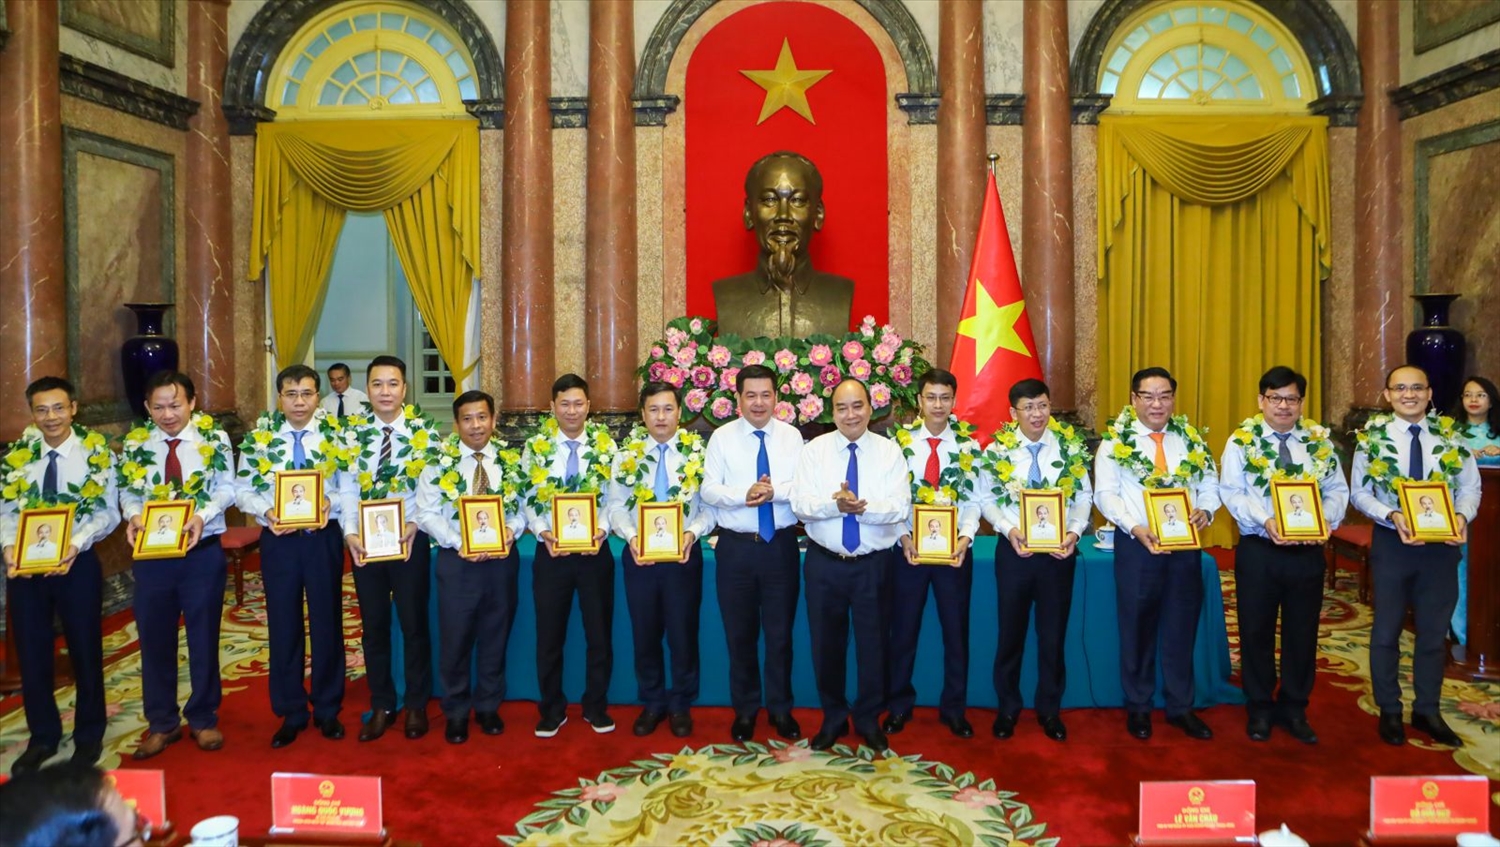 Chủ tịch nước Nguyễn Xuân Phúc tặng chân dung Chủ tịch Hồ Chí Minh cho các đại biểu. Ảnh: VPCTN